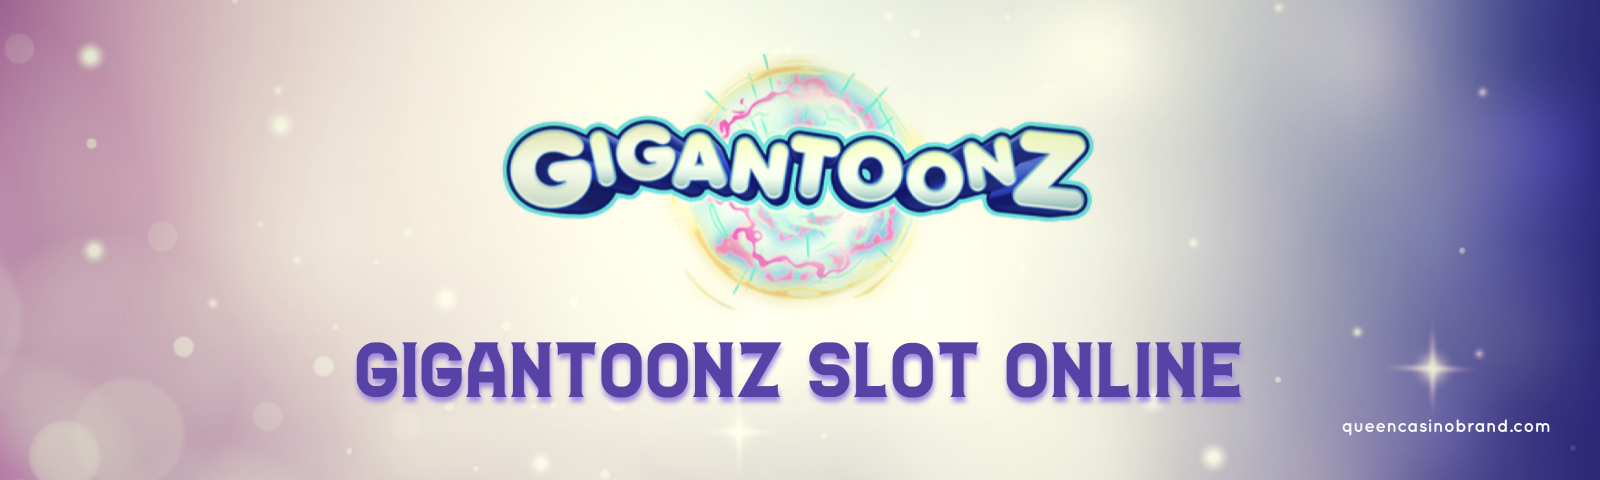 Play Gigantoonz Slot Online | Queen Casino Brand